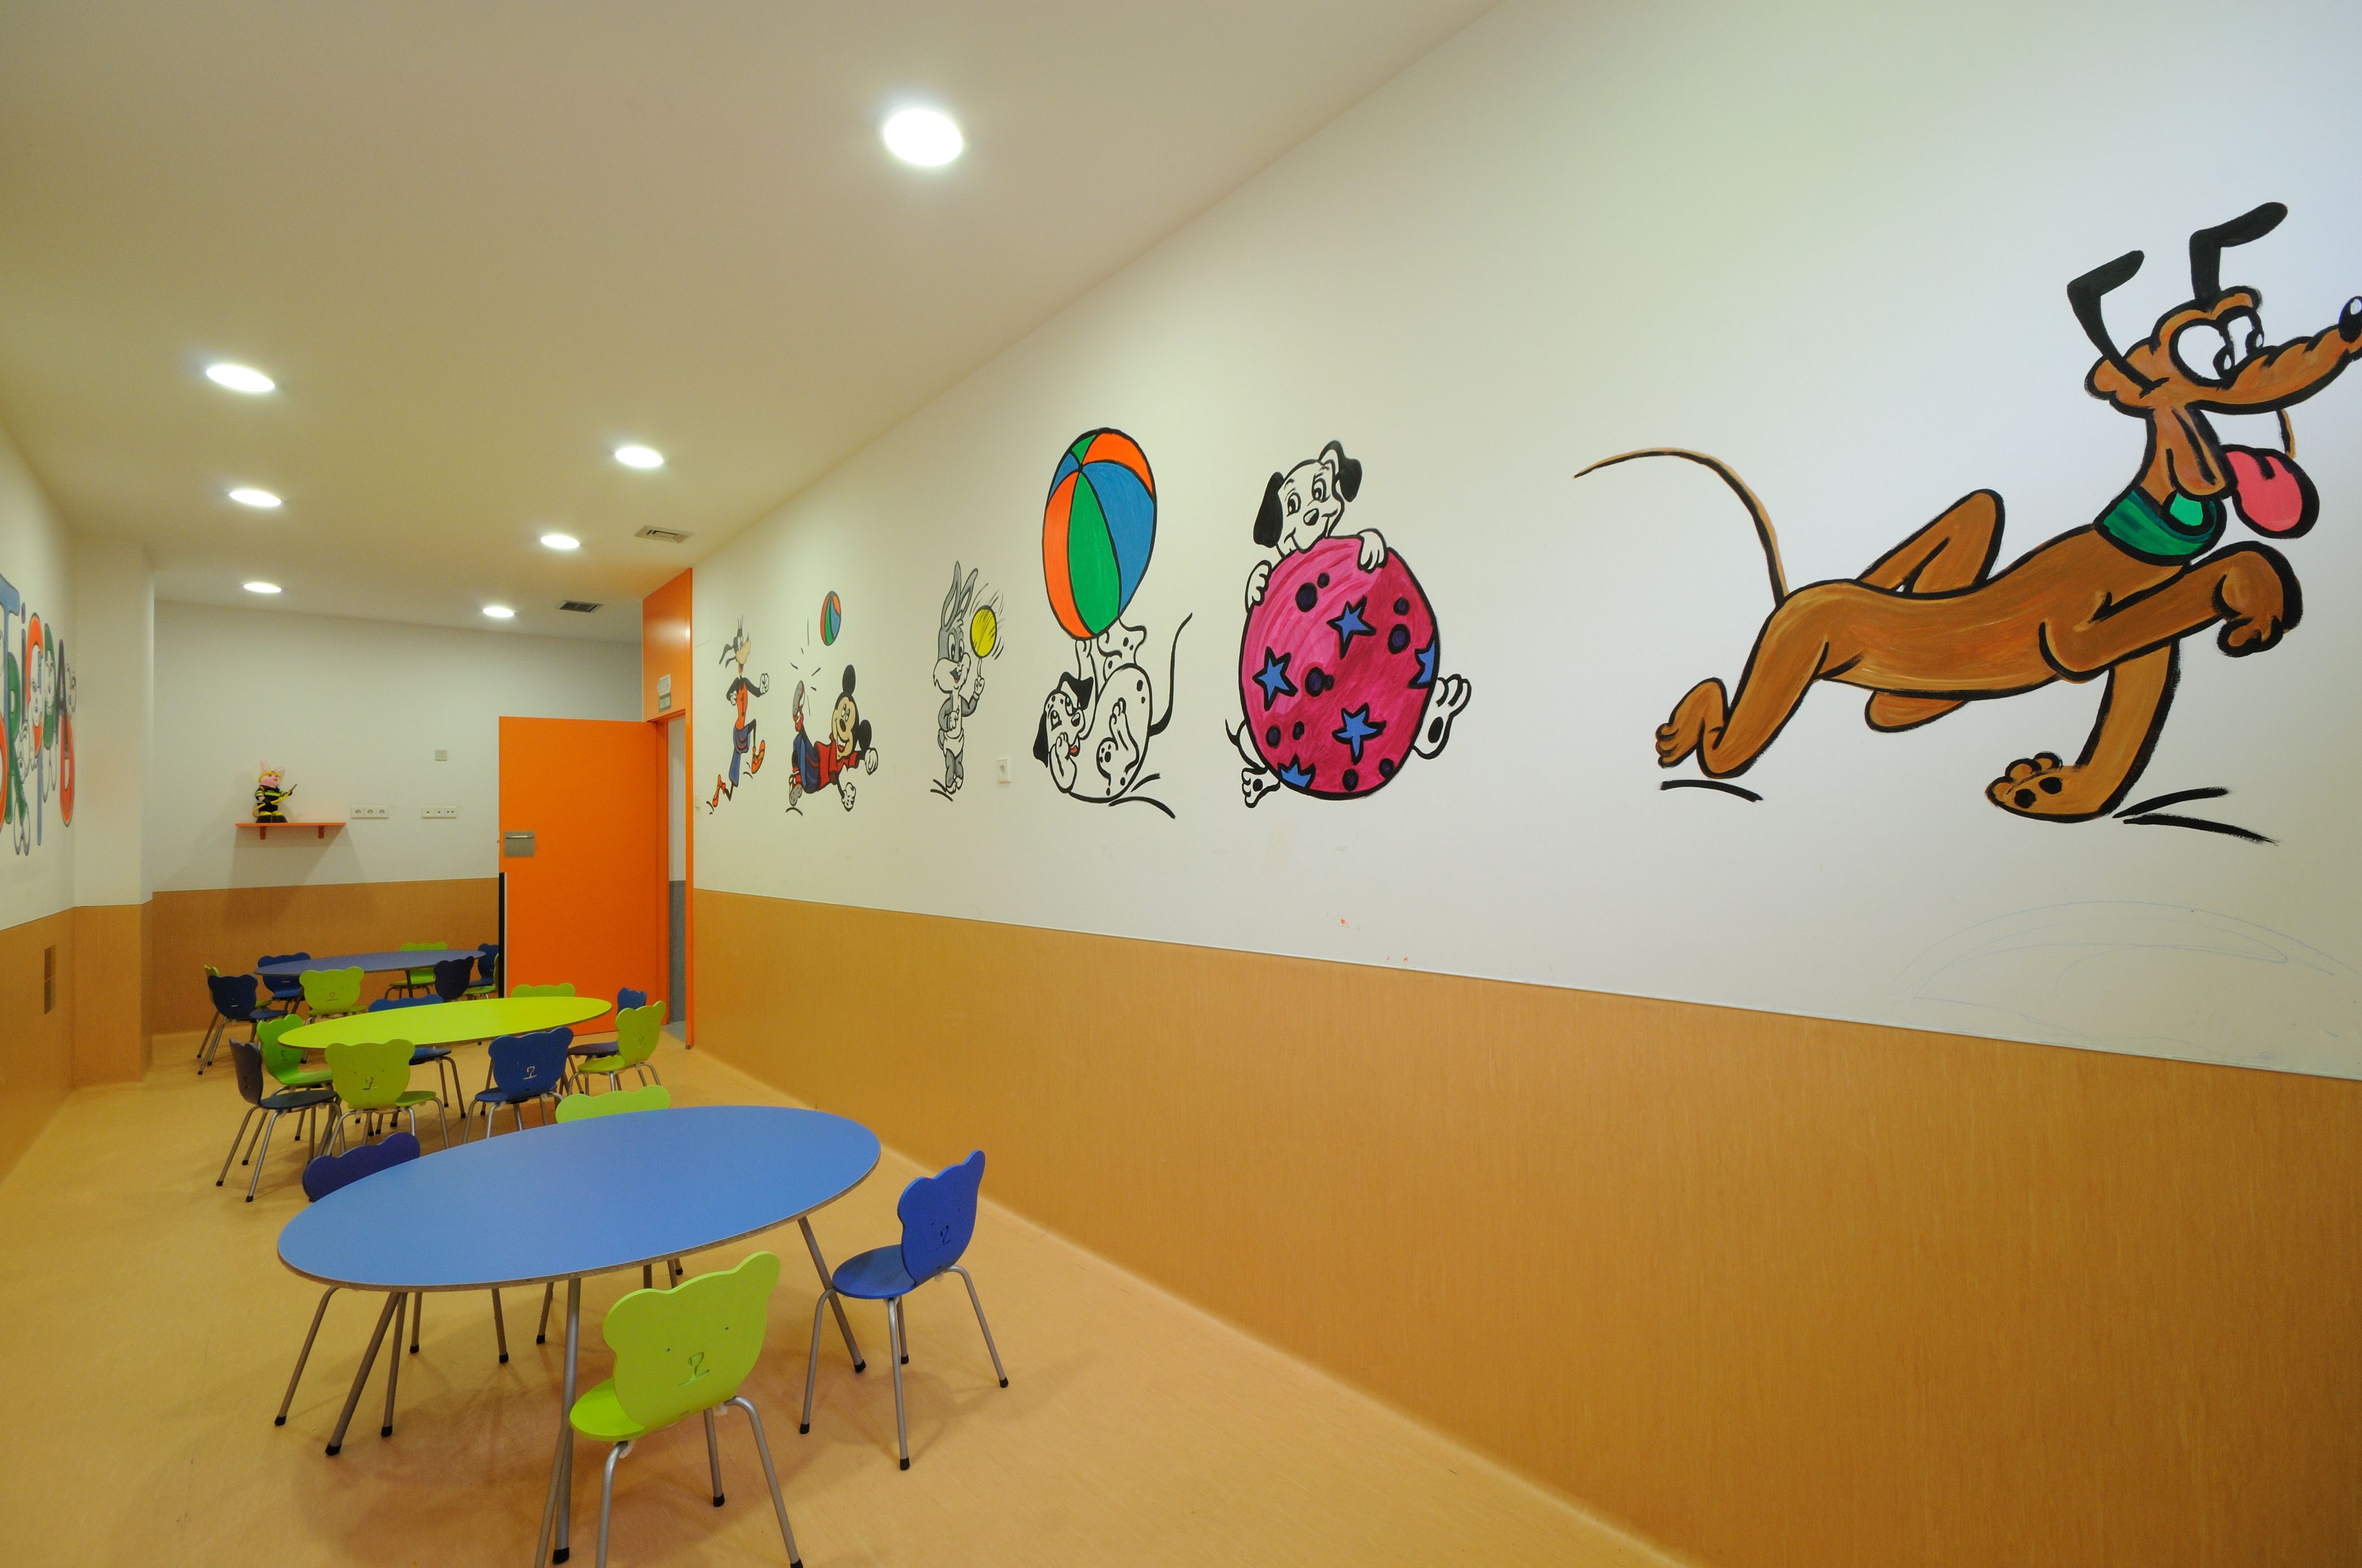 Foto 8 de Guarderías y Escuelas infantiles en Pamplona | Baby School